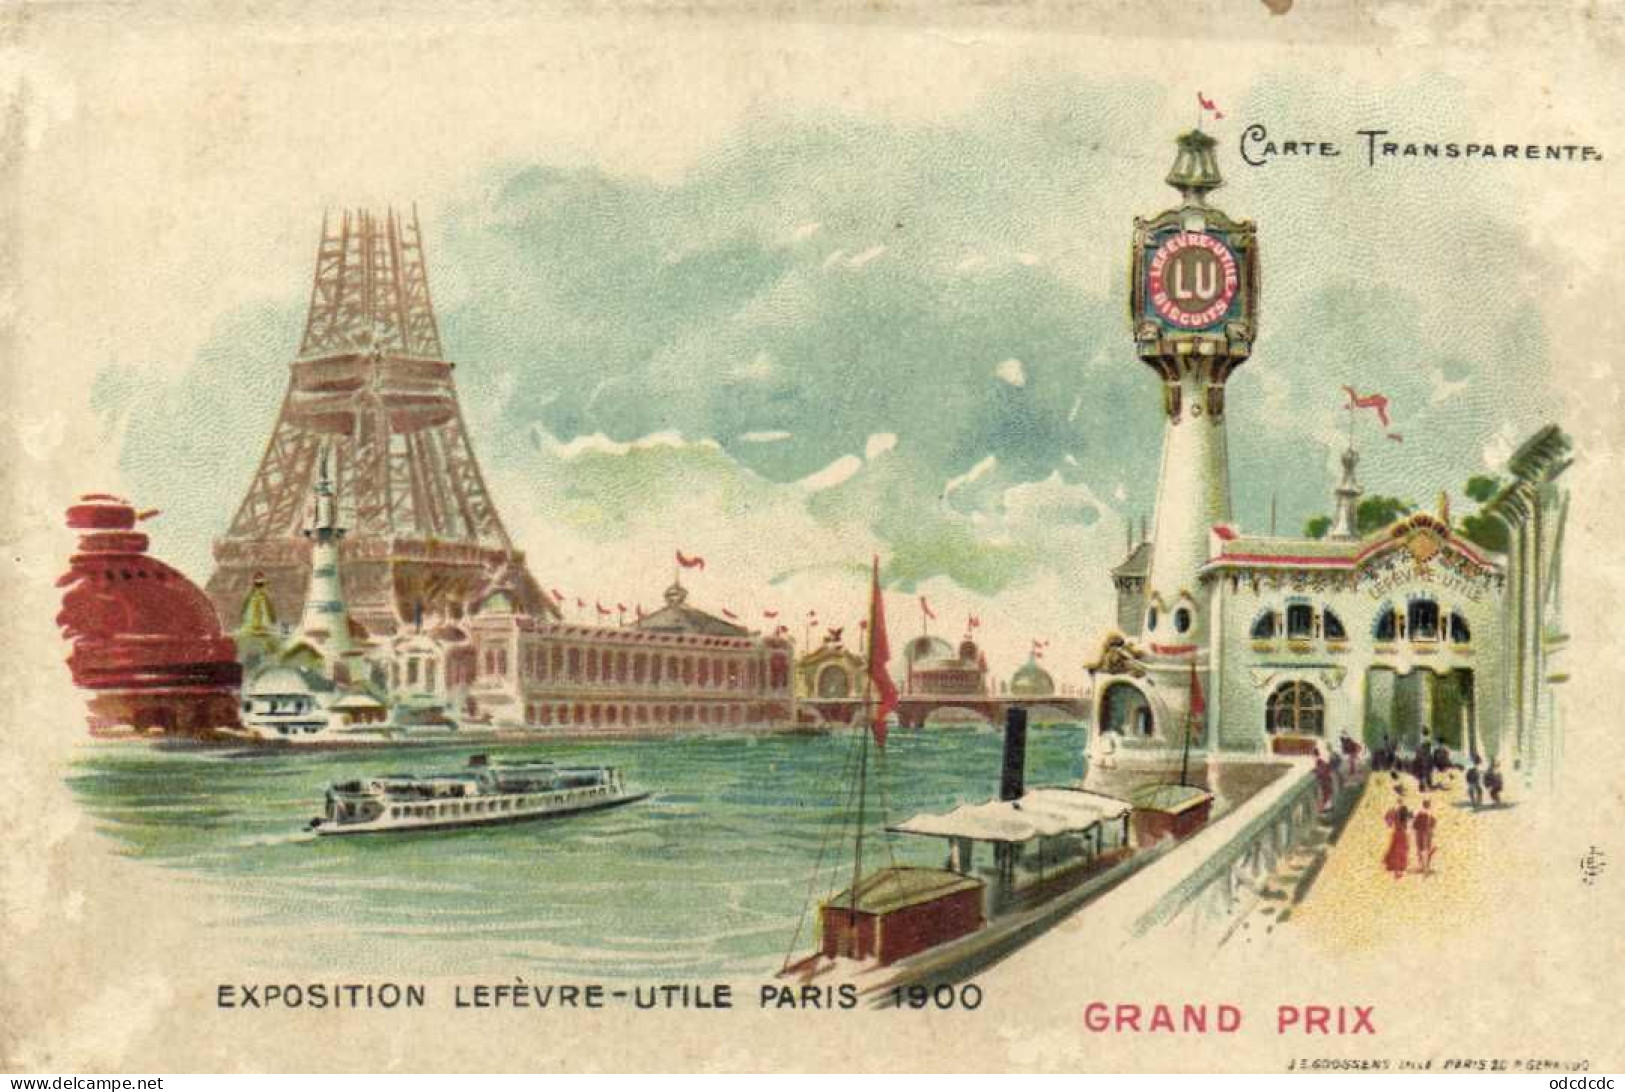 EXPOSITION LEFEVRE UTILE  PARIS 1900 GRAND PRIX  Carte Transparente Pionnière RV - Ausstellungen